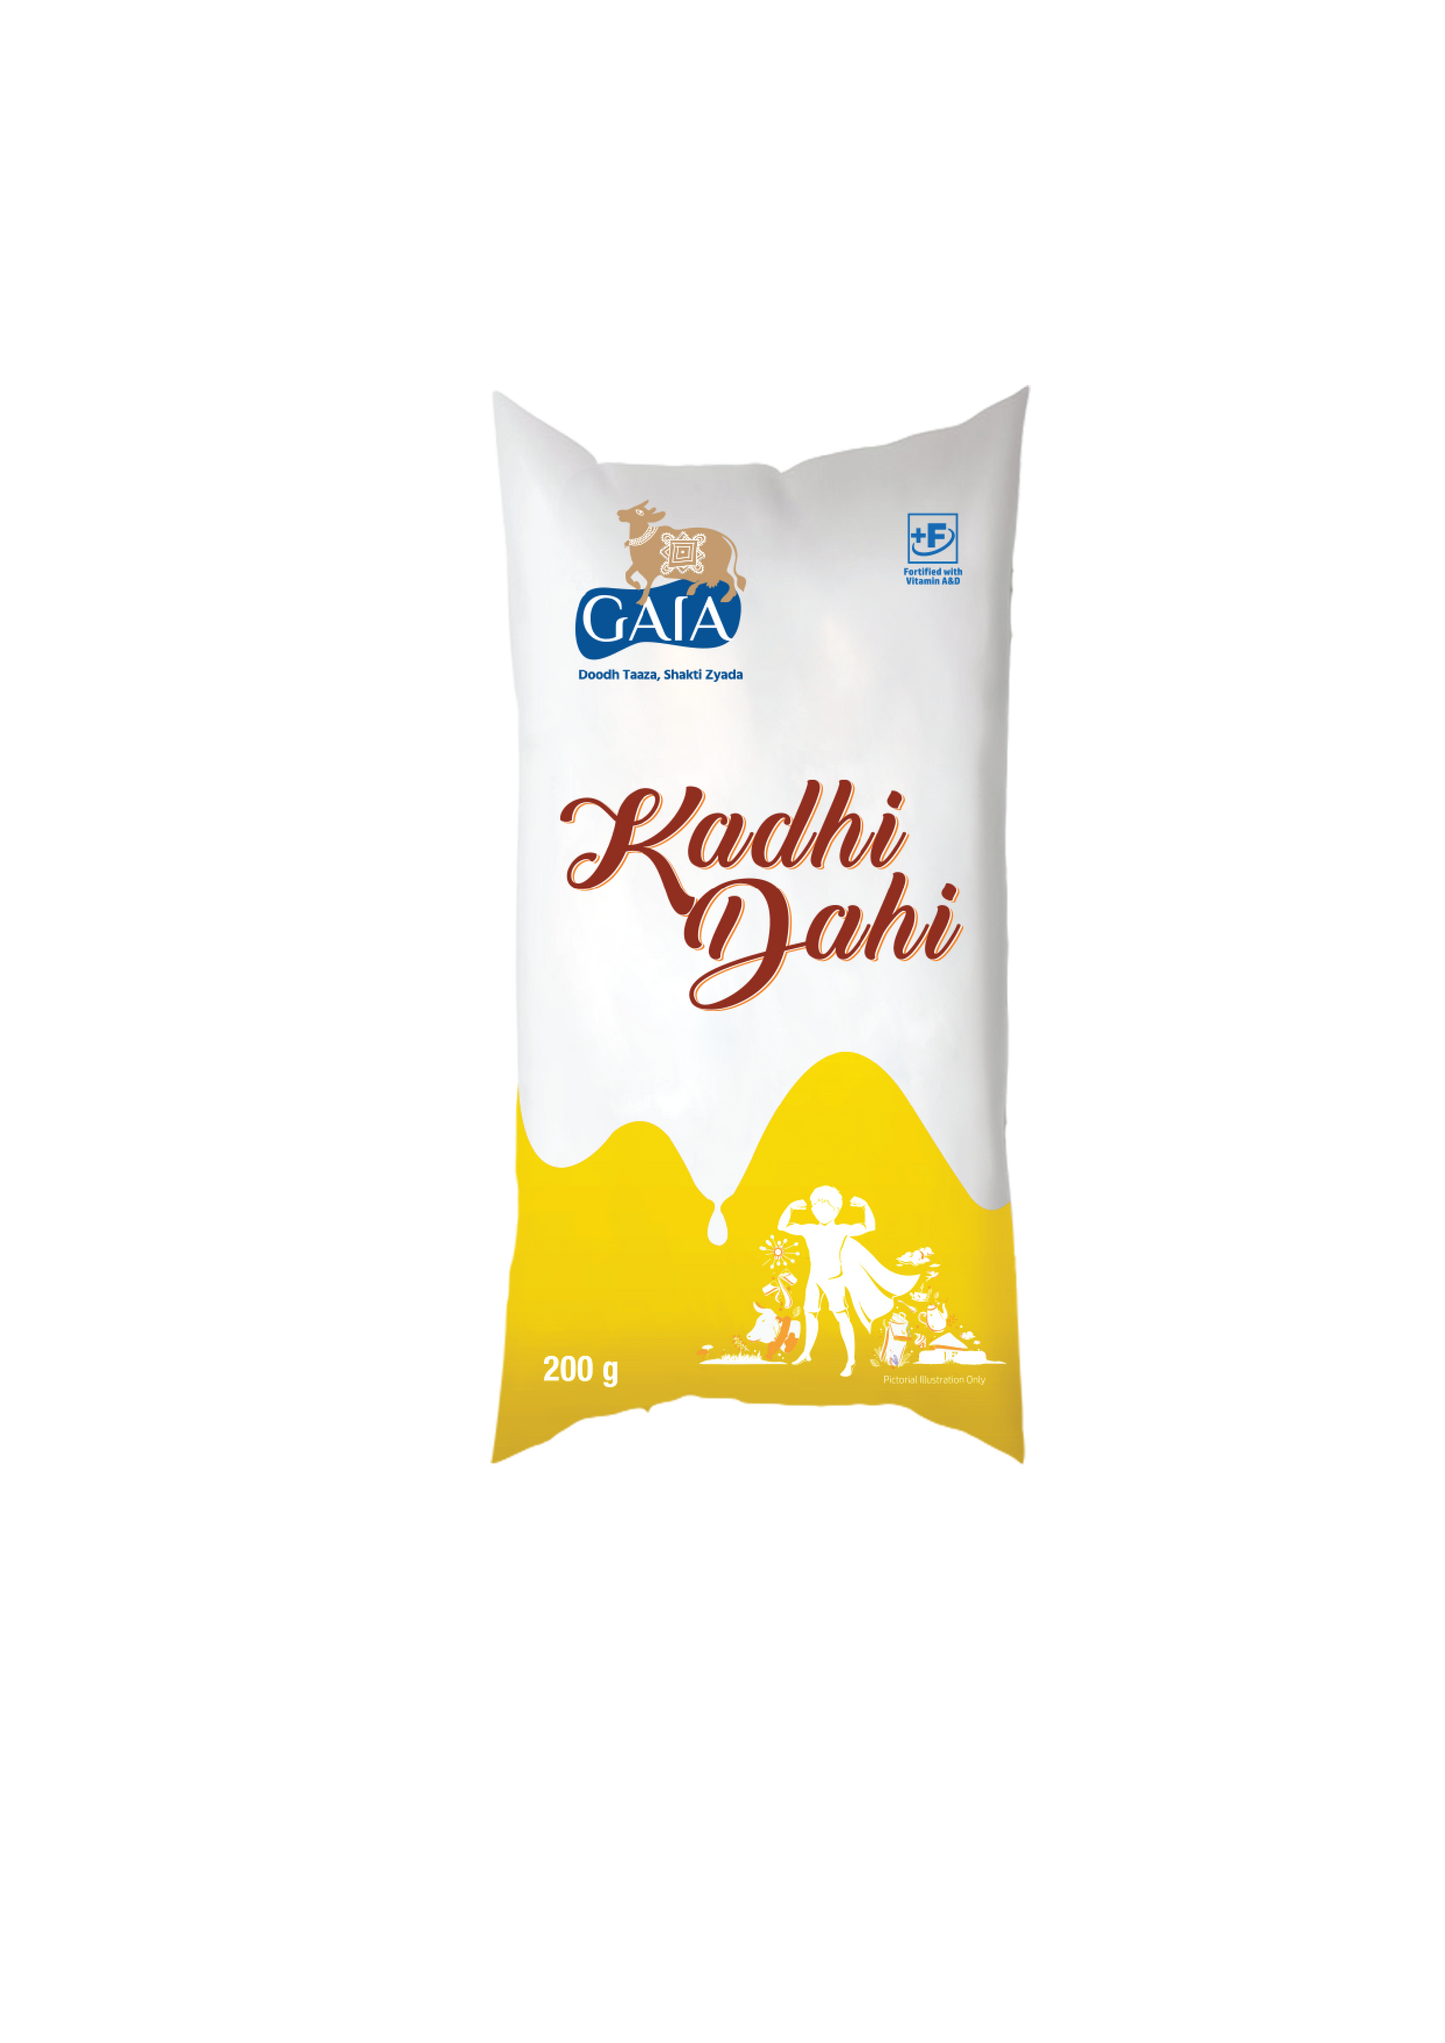 Gaia Kadhi Dahi Pouch 200g